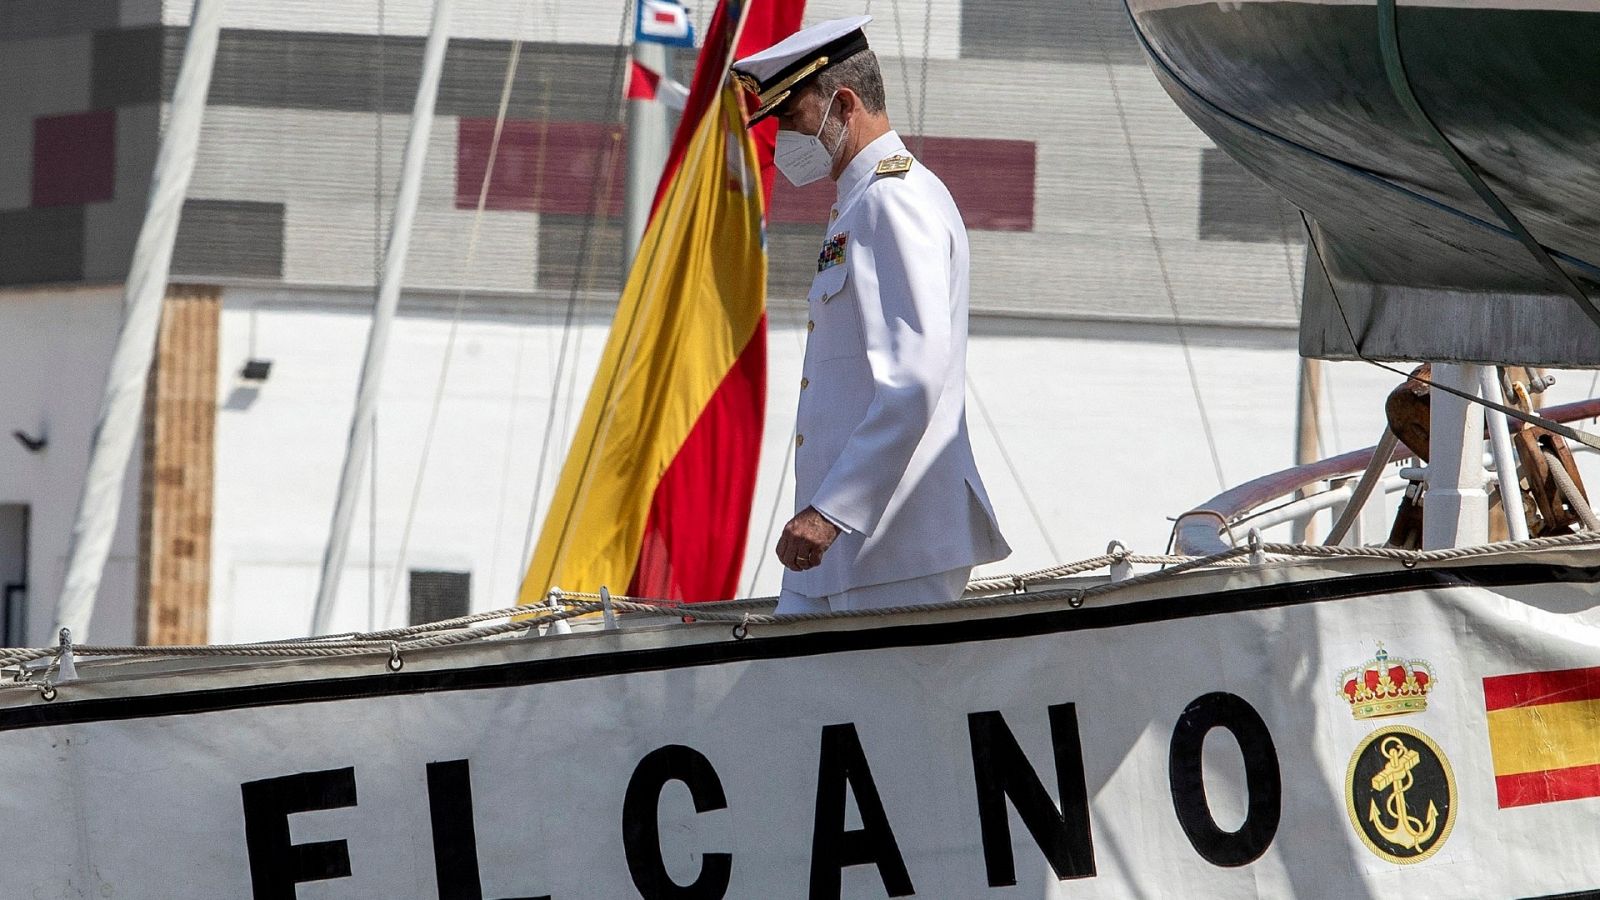 El buque Juan Sebastián Elcano llega a Cádiz tras diez meses de travesía